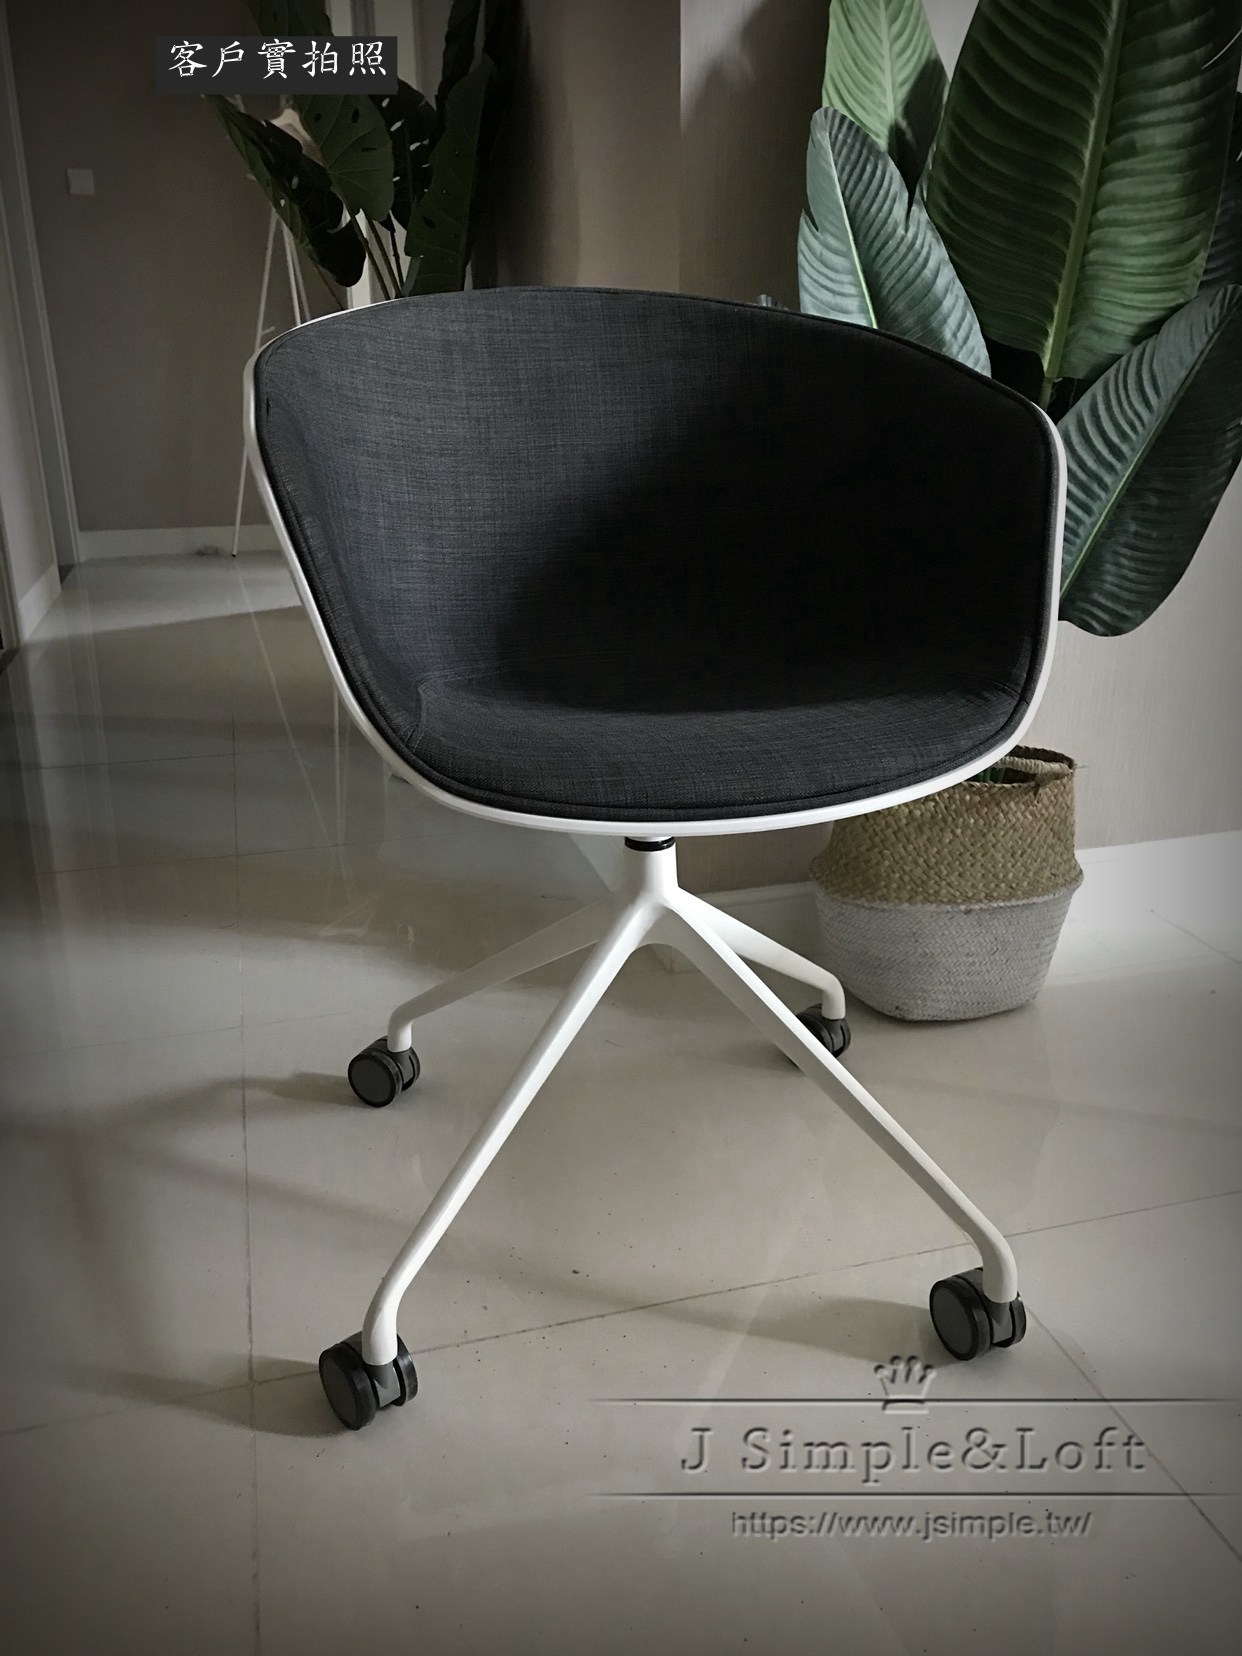 15丹麥設計簡約餐椅BT058 (5).jpg